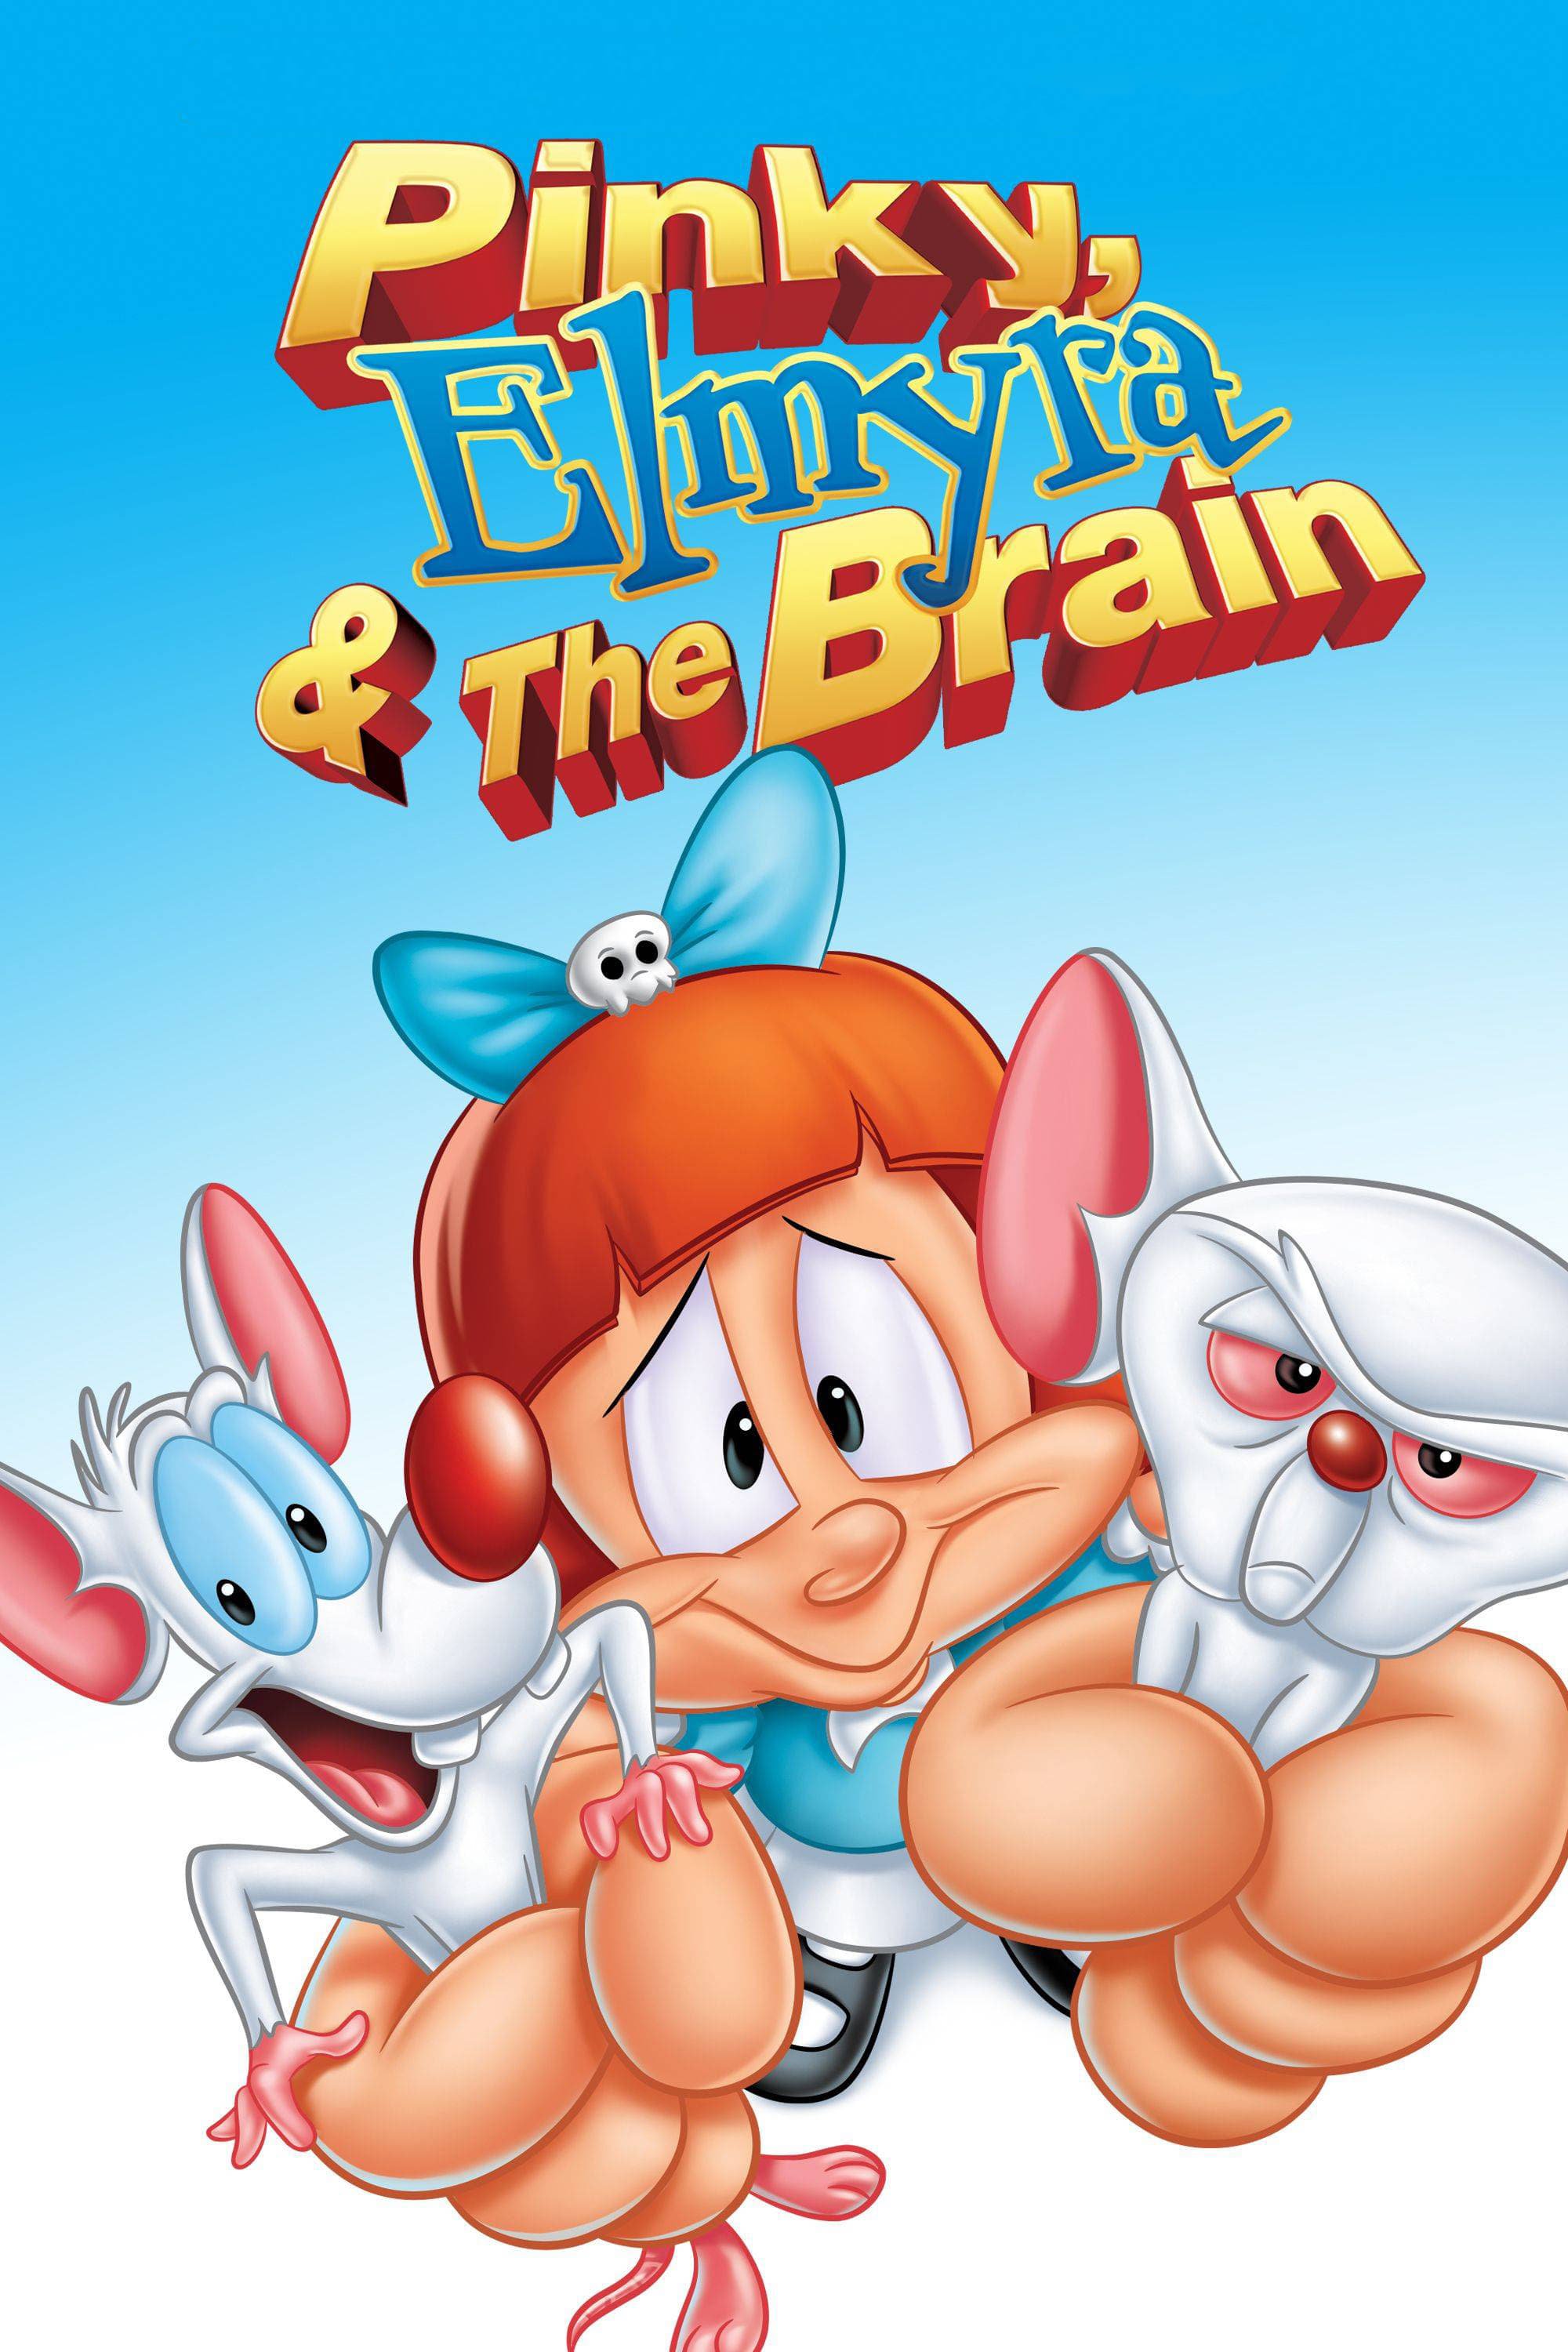 Pinky, Elmyra & The Brain